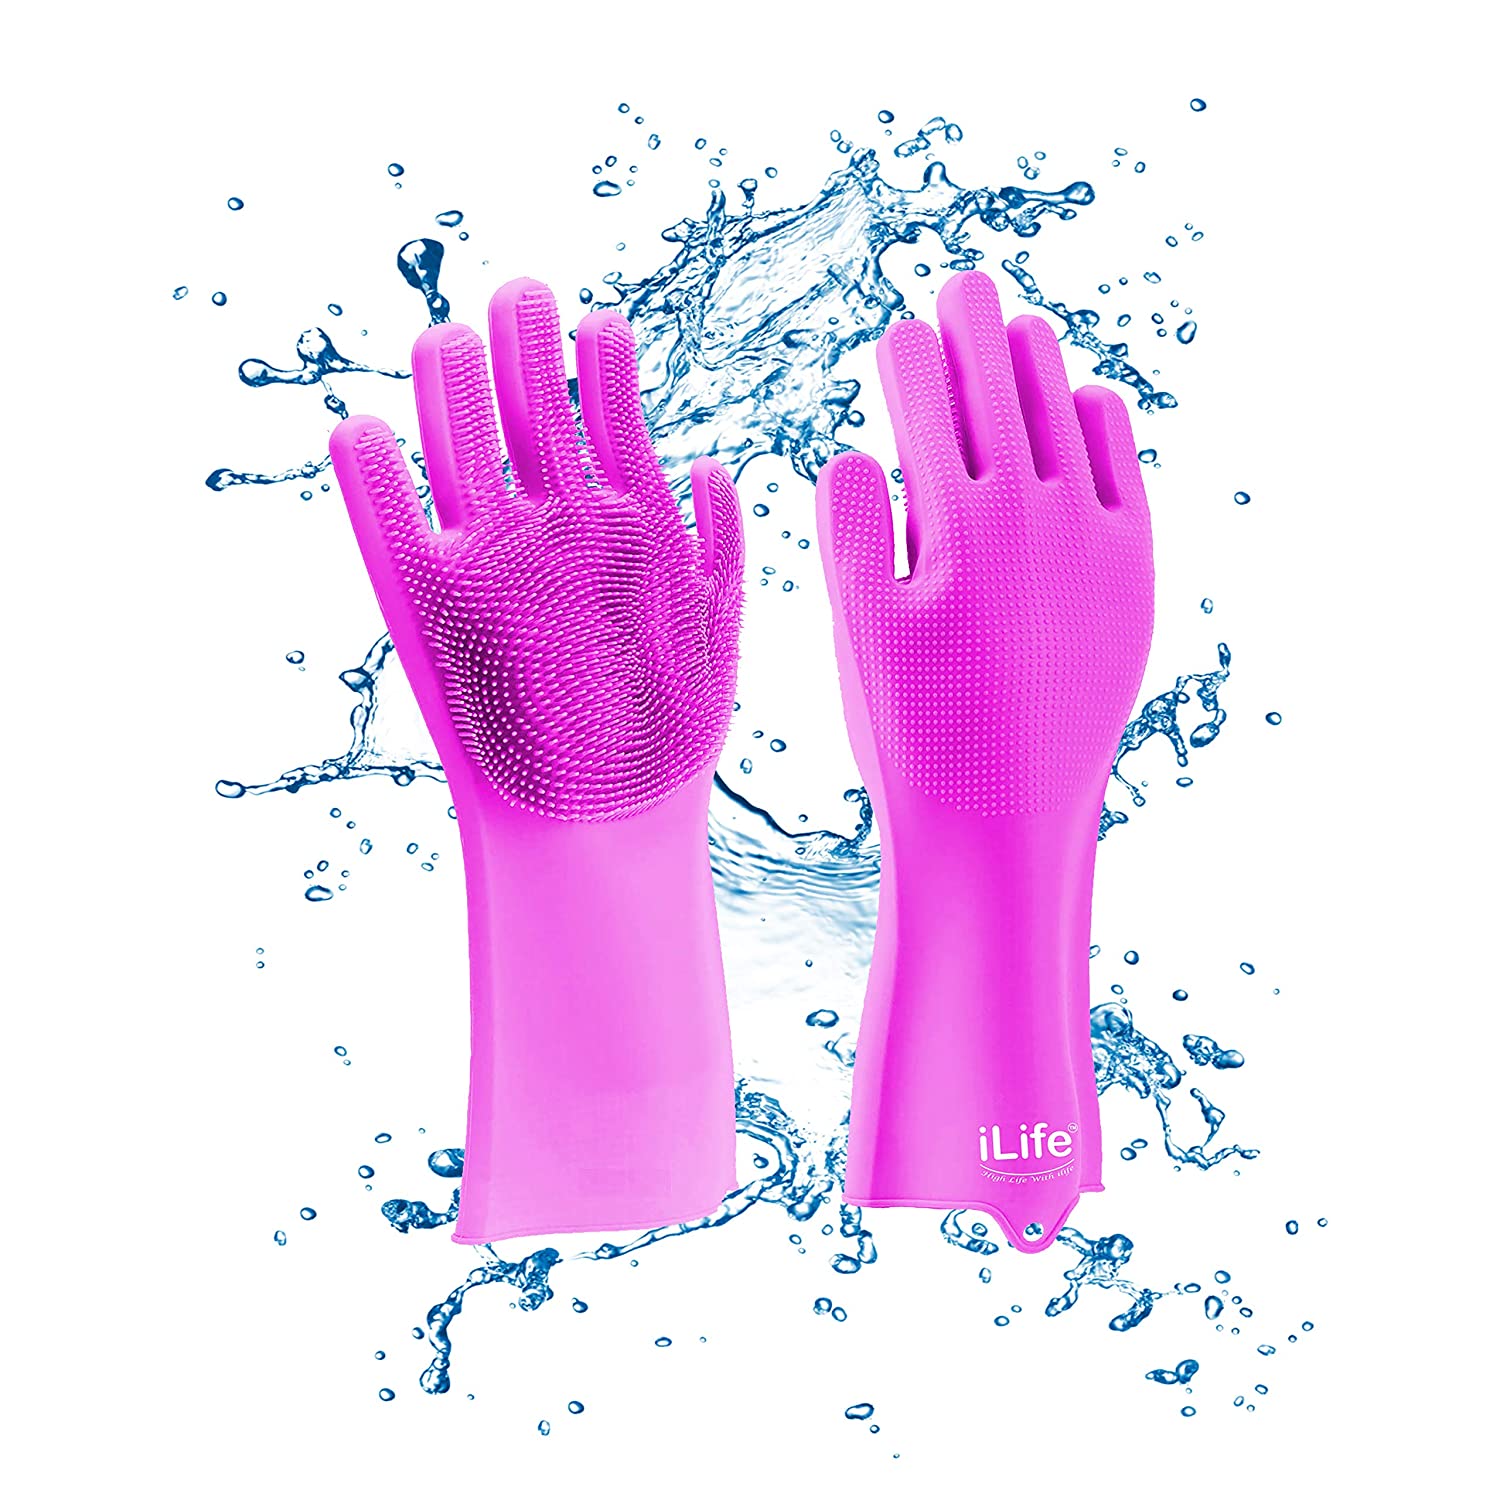  Silicone gloves; Scrub Gloves ; Bath Gloves ; pink scrub gloves